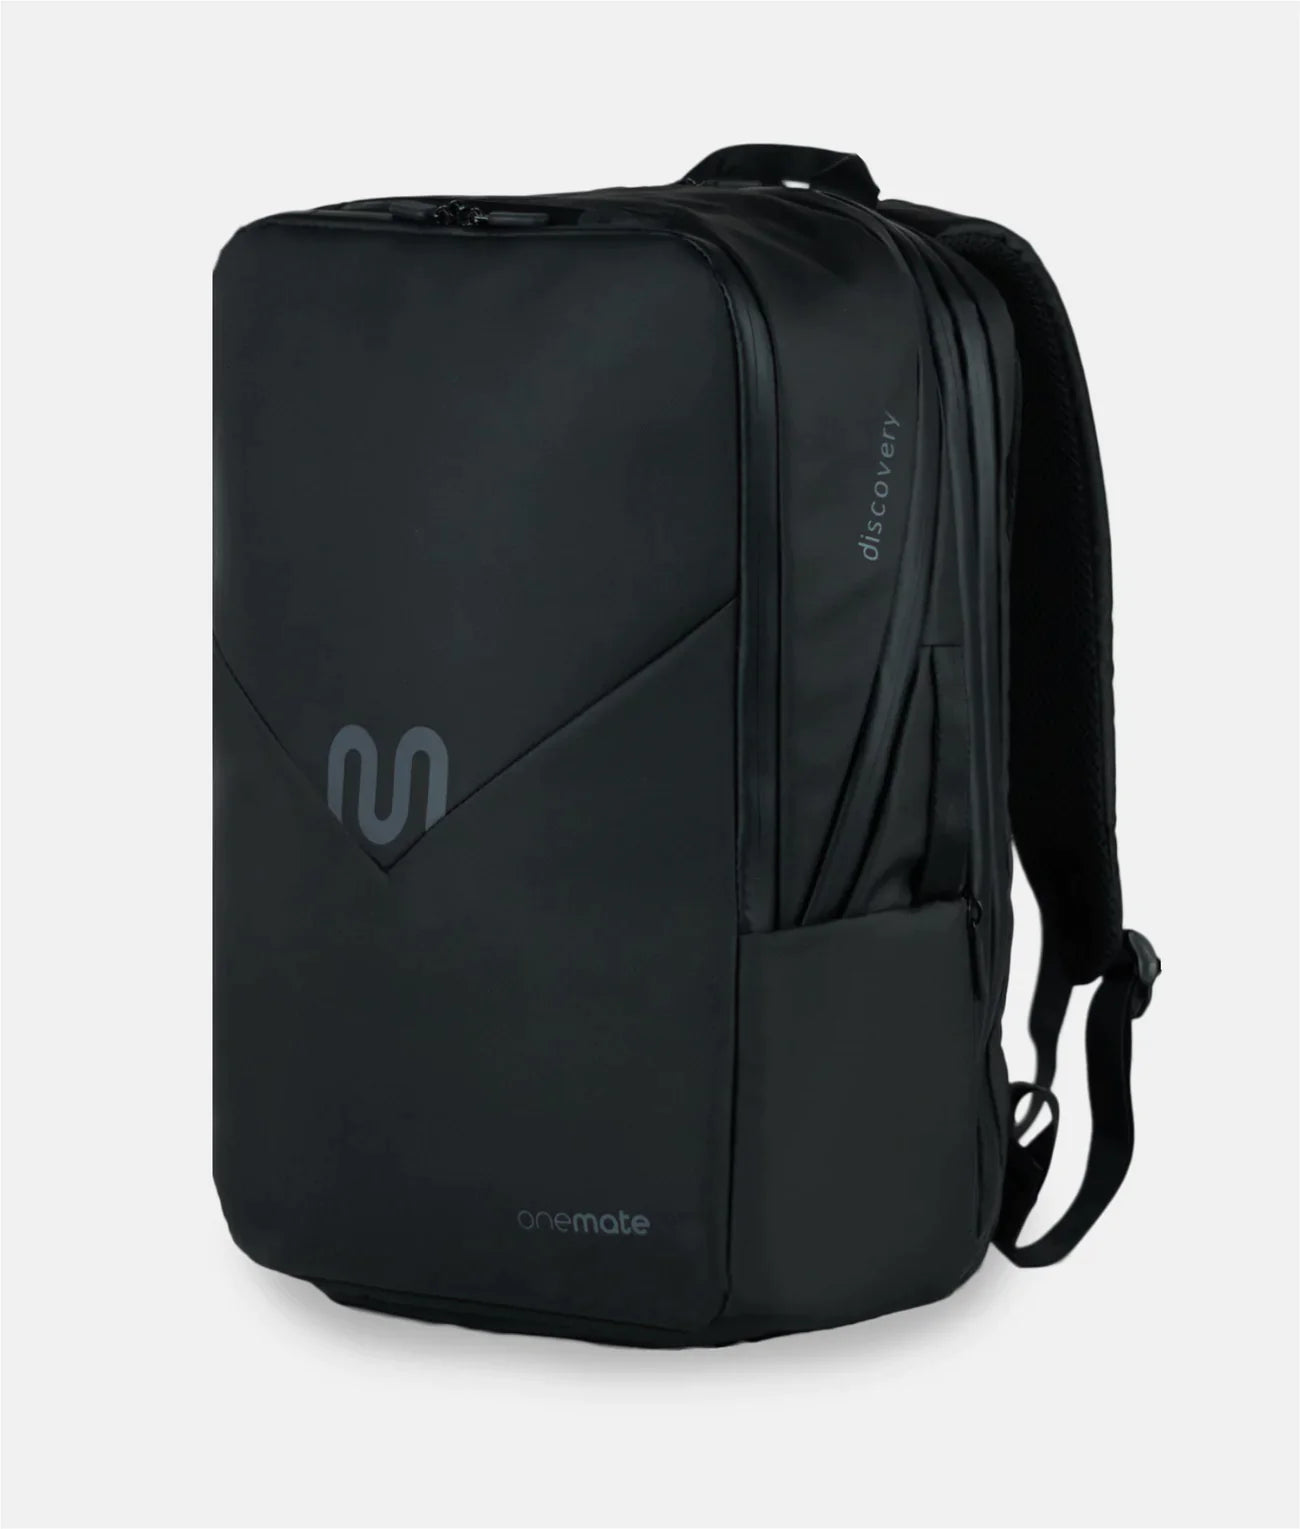 Bestseller Bundle: Backpack Pro + Hip Bag Pro